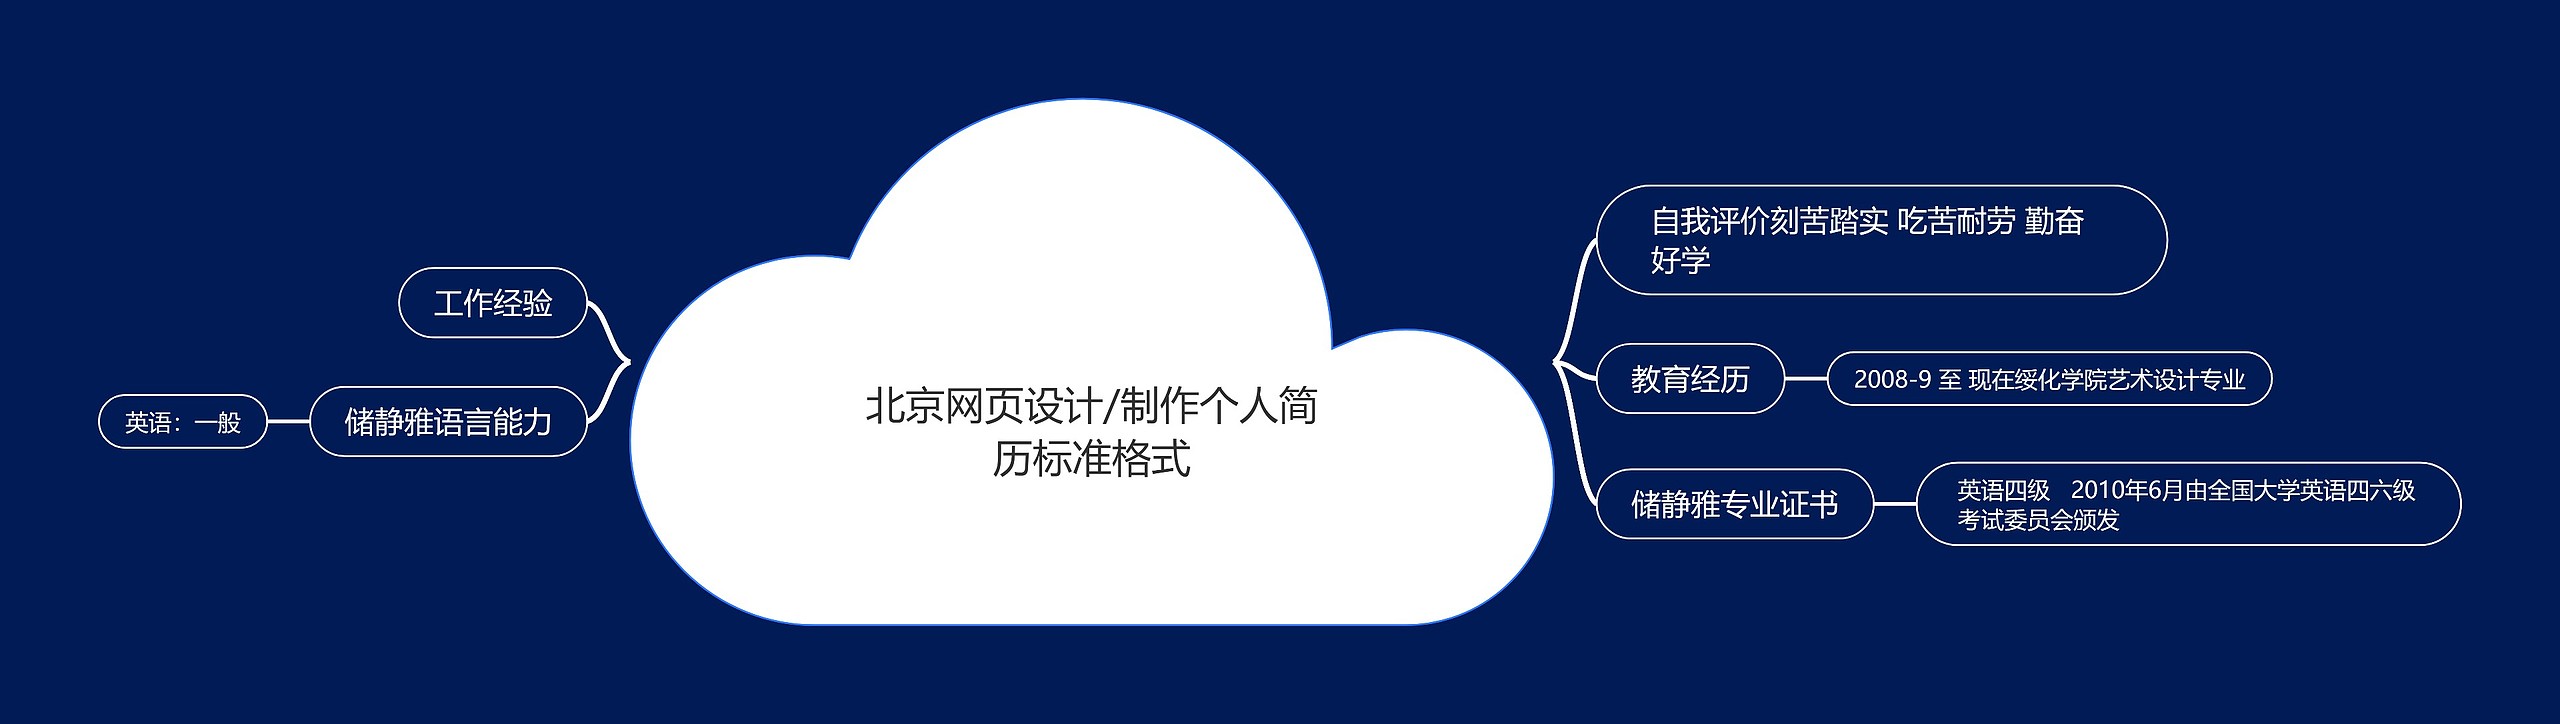 北京网页设计/制作个人简历标准格式思维导图